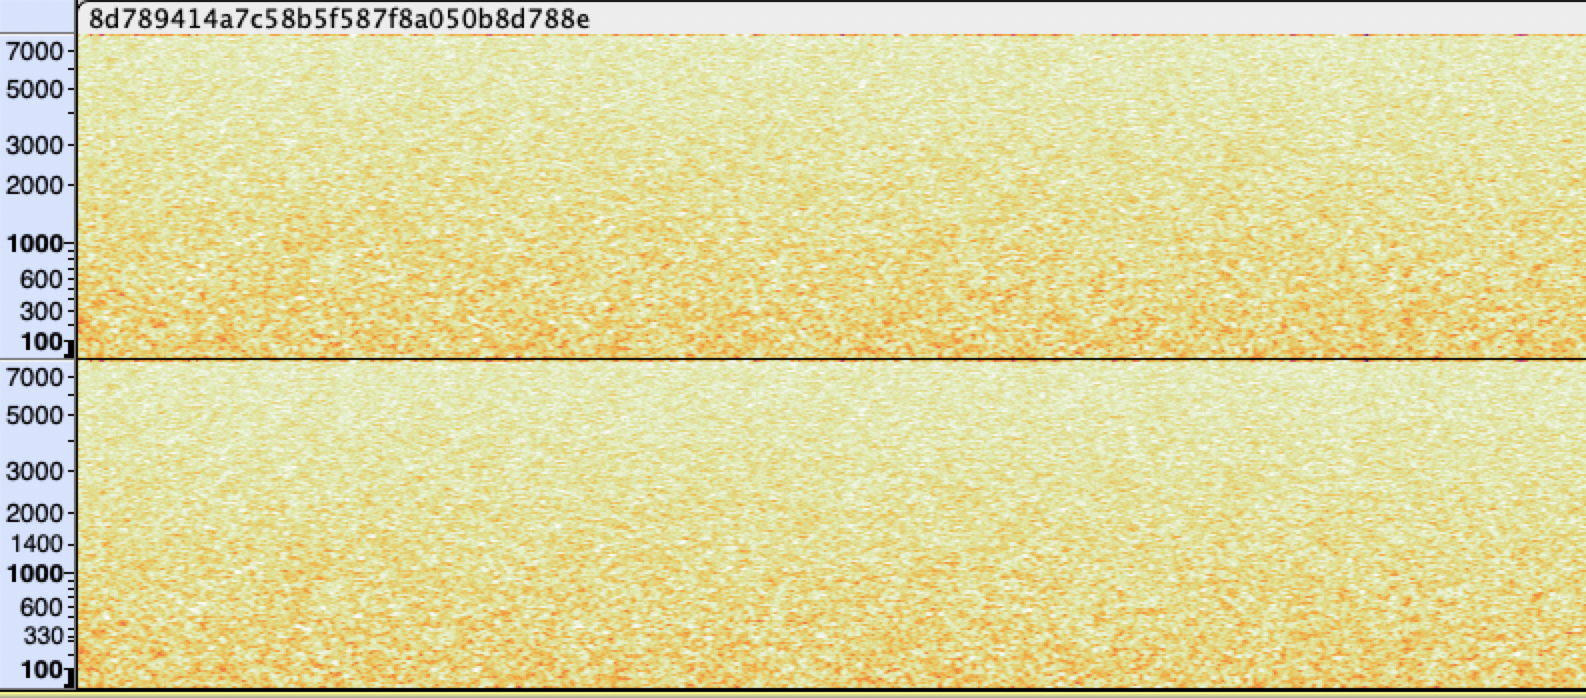 Spectrogram of the WAV file